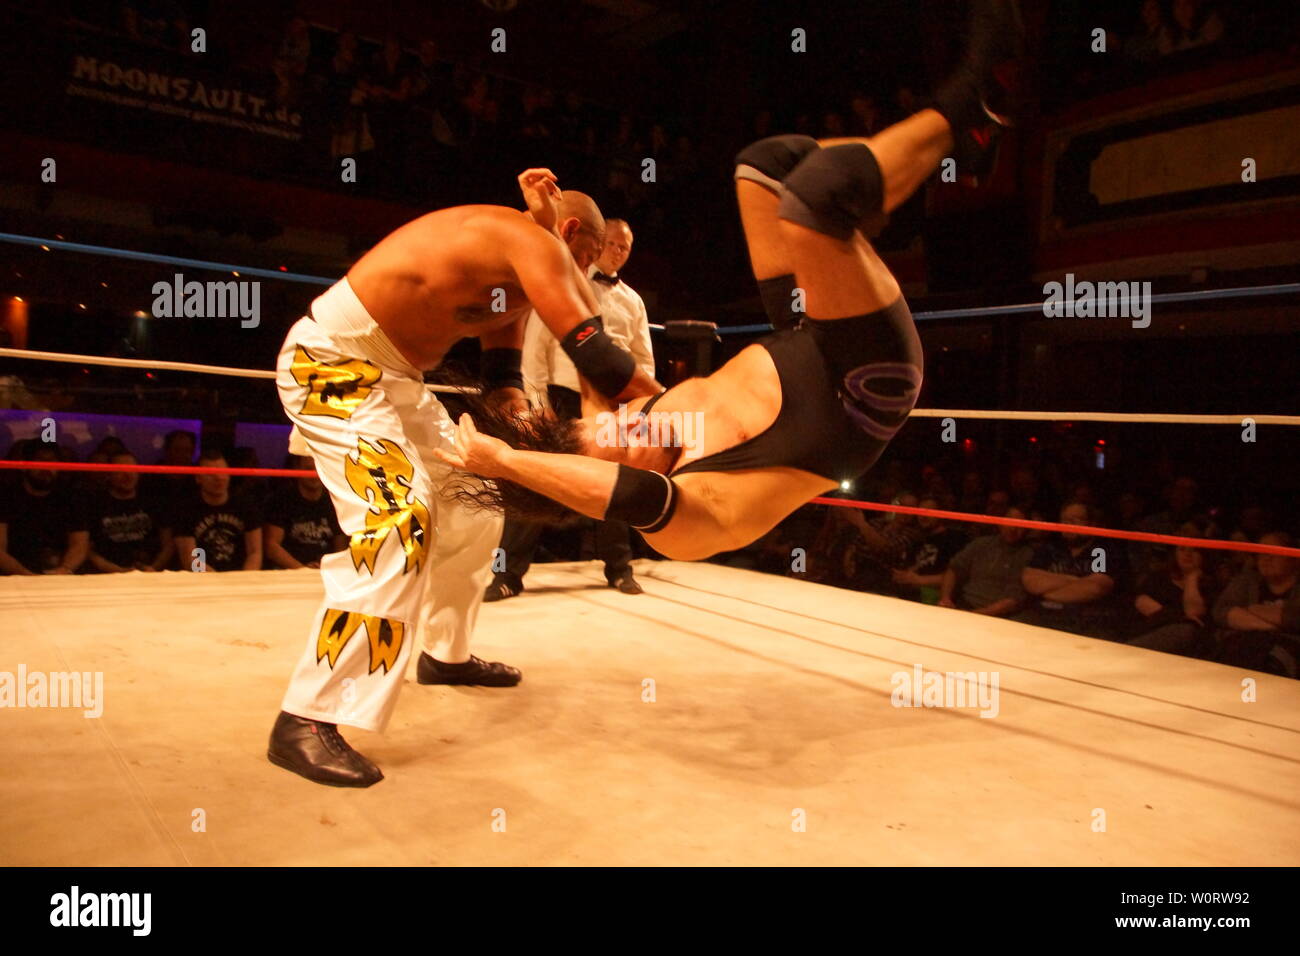 Kiel, Alemania. 20 Jan, 2018.La lucha entre App Singh y ex luchador de WWE y TNA Joe E. Legend para el Campeonato máximo Foto de stock